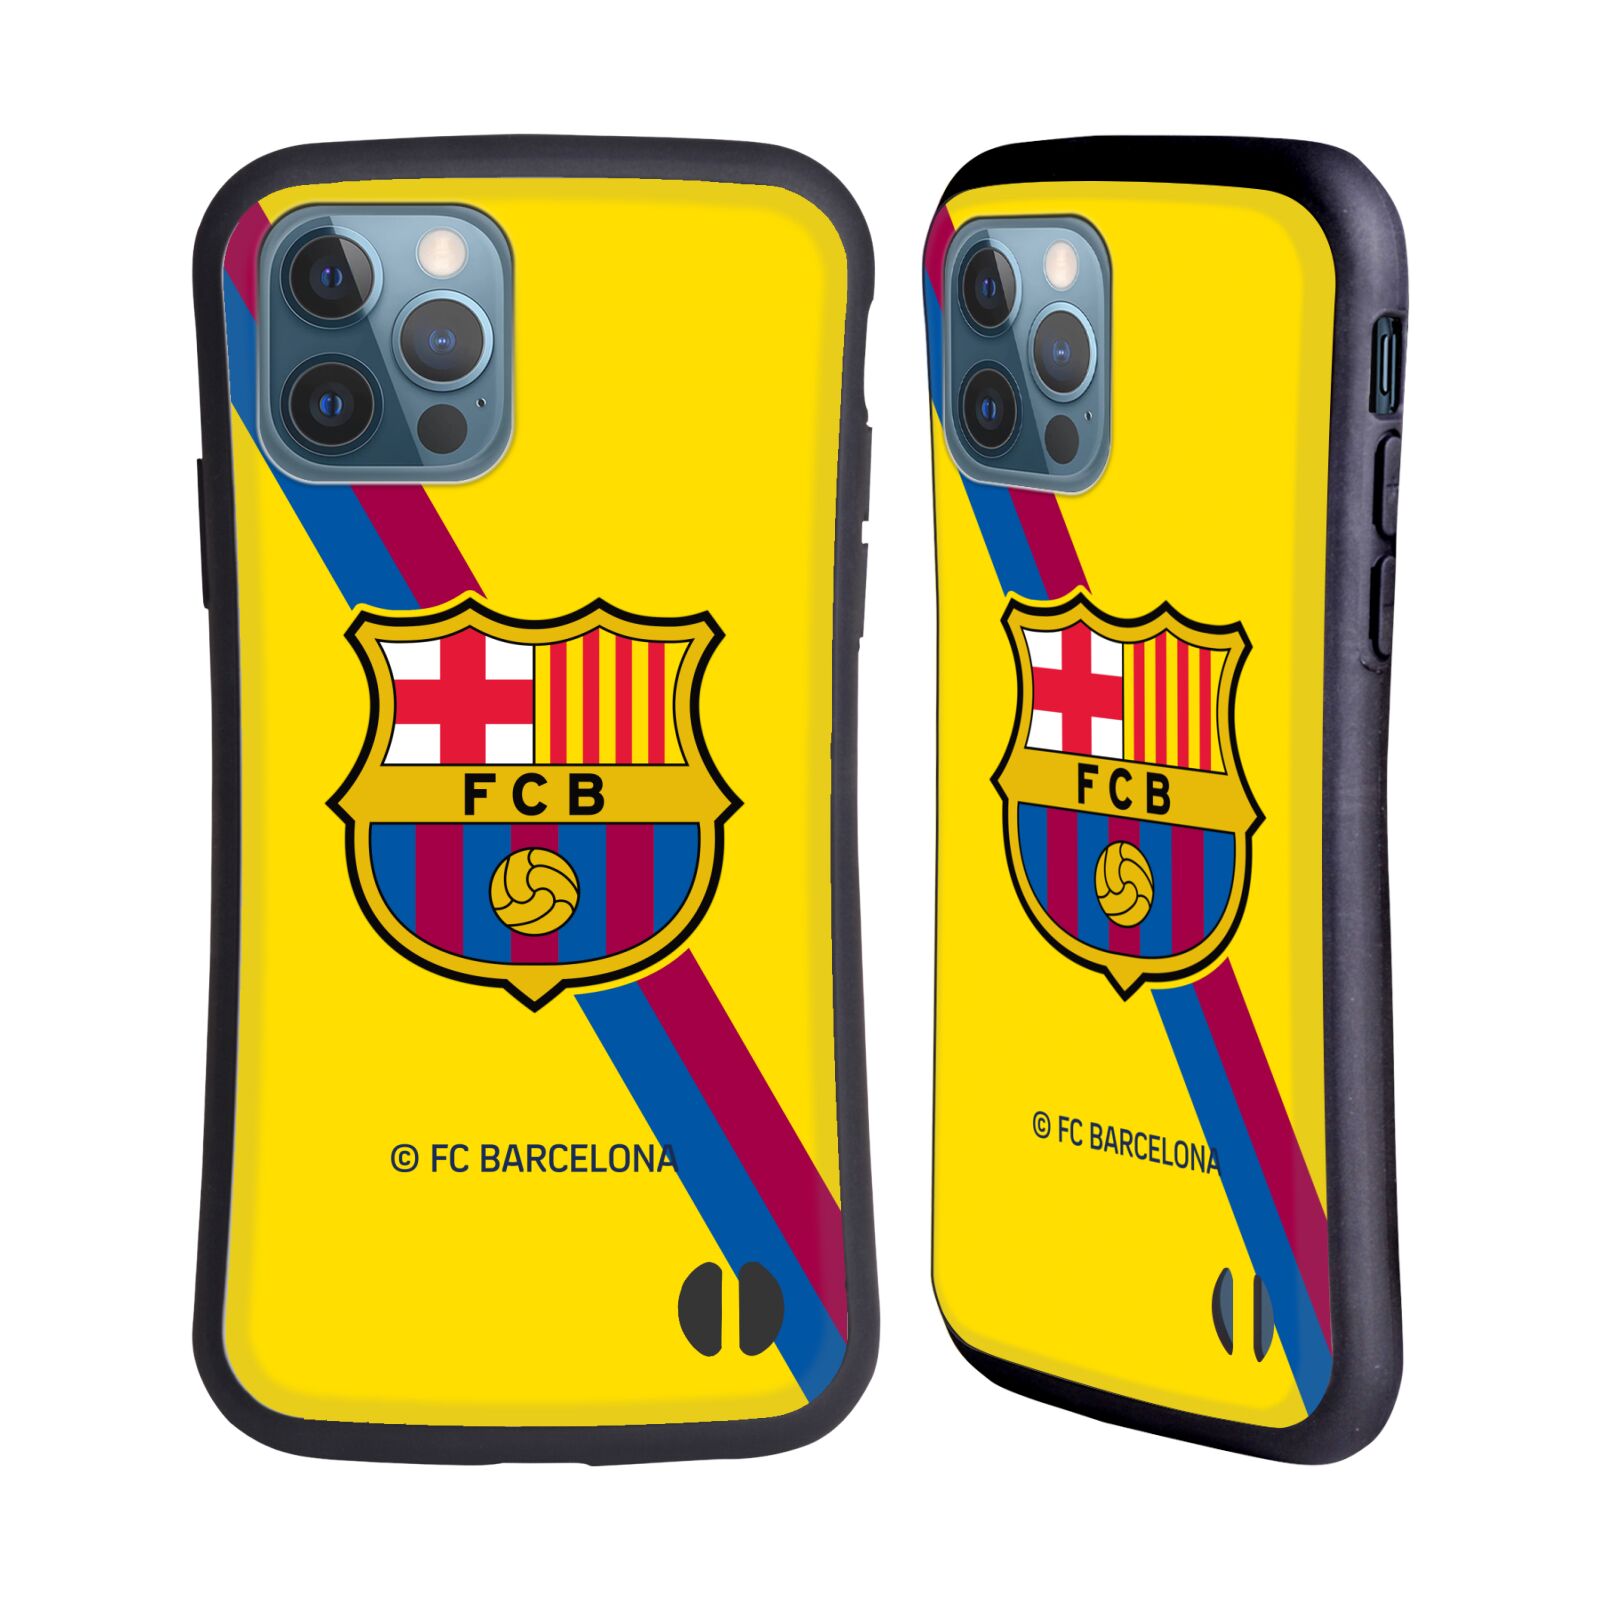 Odolný zadní obal pro mobil Apple iPhone 12 / iPhone 12 Pro - HEAD CASE - FC Barcelona - Žlutý dres